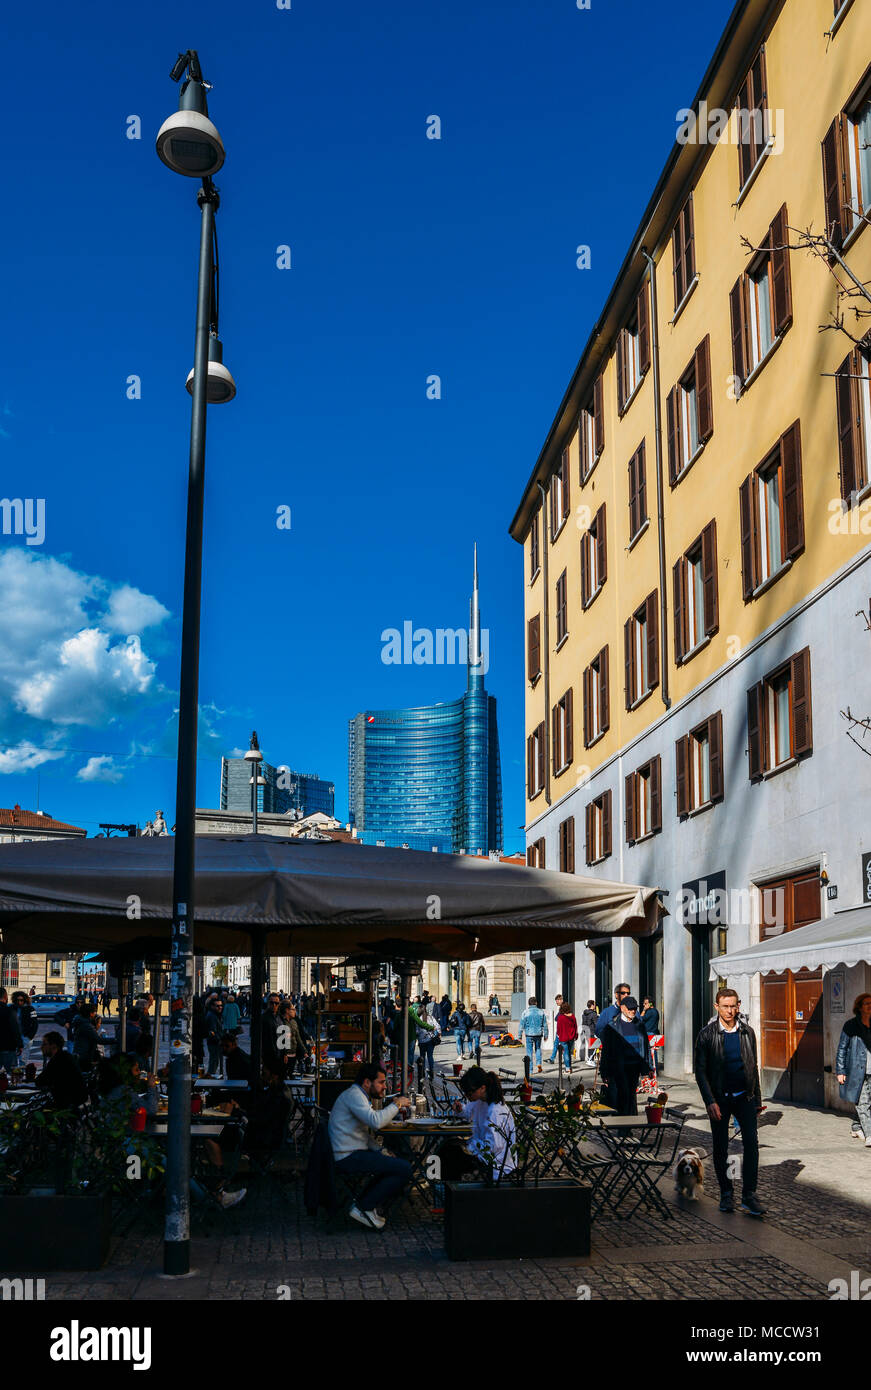 Mailand, Italien - 1. April 2018: Fußgänger am Corso Garibaldi im historischen Zentrum von Mailand Stockfoto